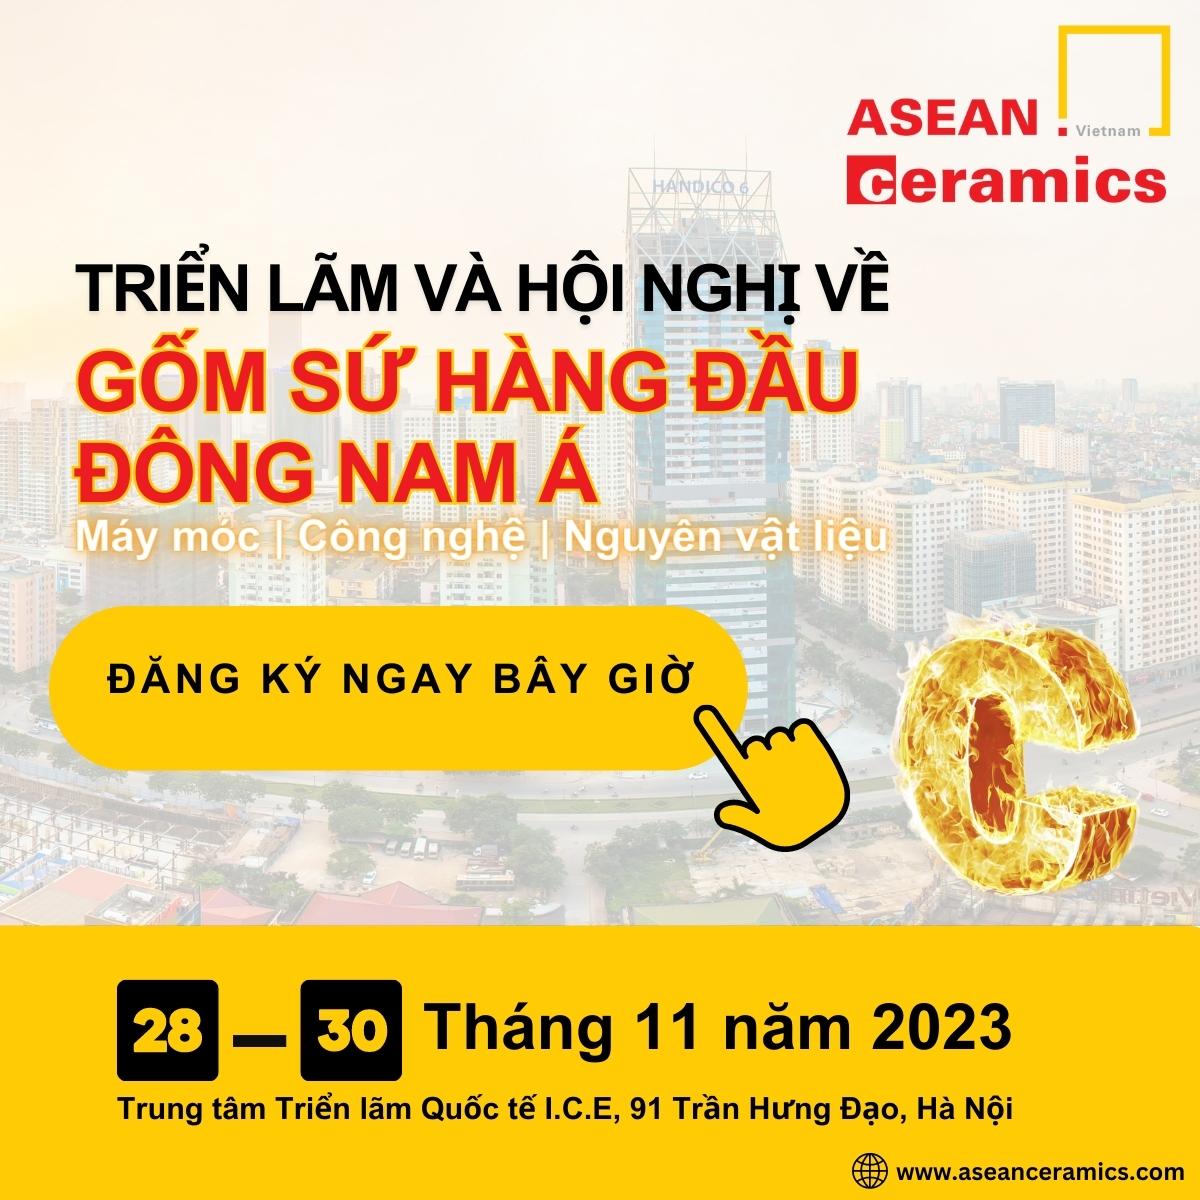 Kính mời tham dự Hội chợ triển lãm Asean Ceramics 2023 Hà Nội Việt Nam